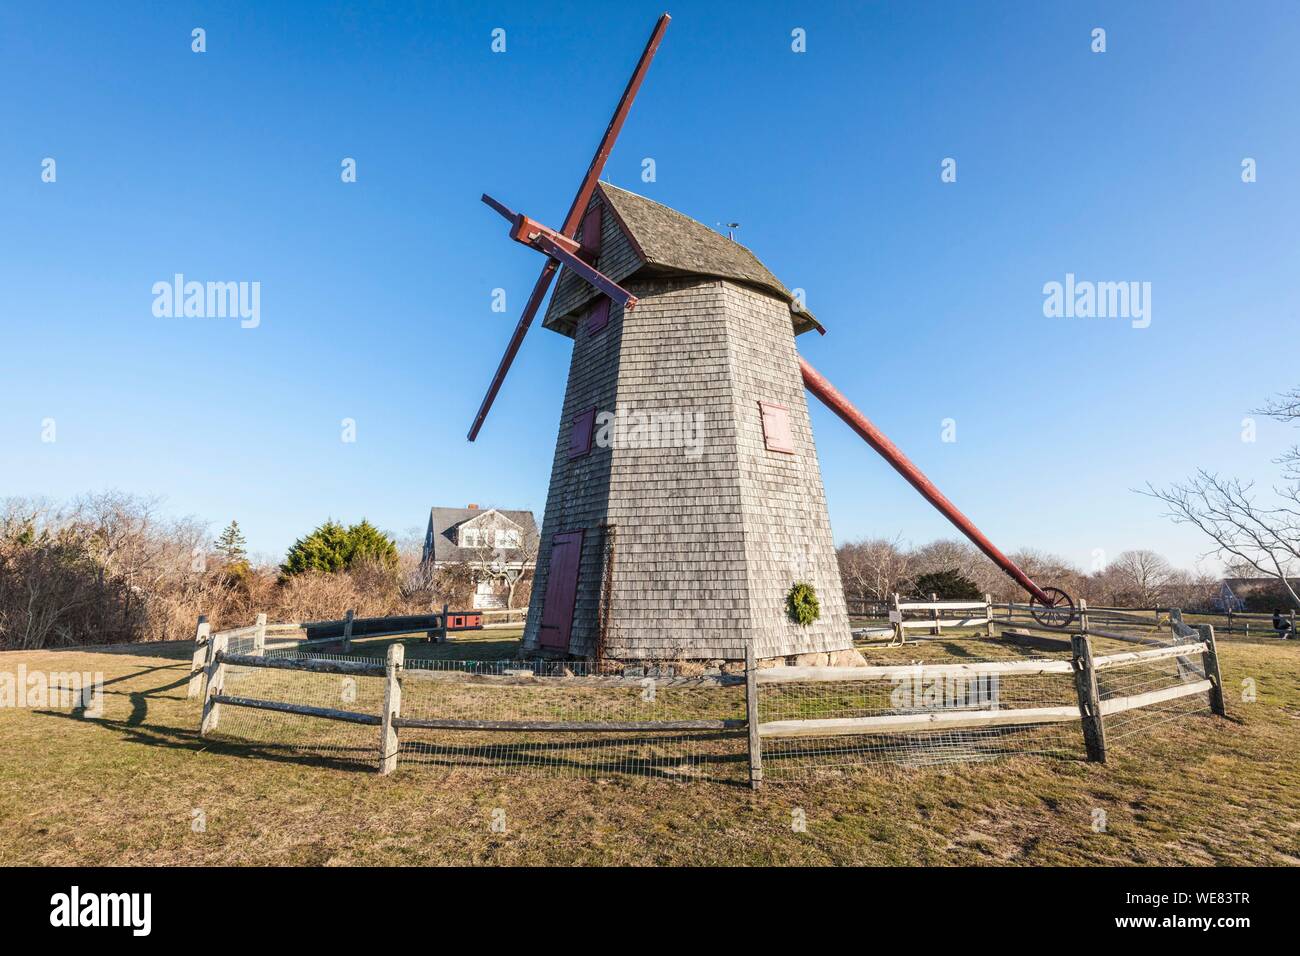 United States, New England, New Jersey, l'île de Nantucket, Nantucket,  ancien moulin à vent, plus ancien moulin d'exploitation aux États-Unis, en  activité depuis 1746 Photo Stock - Alamy